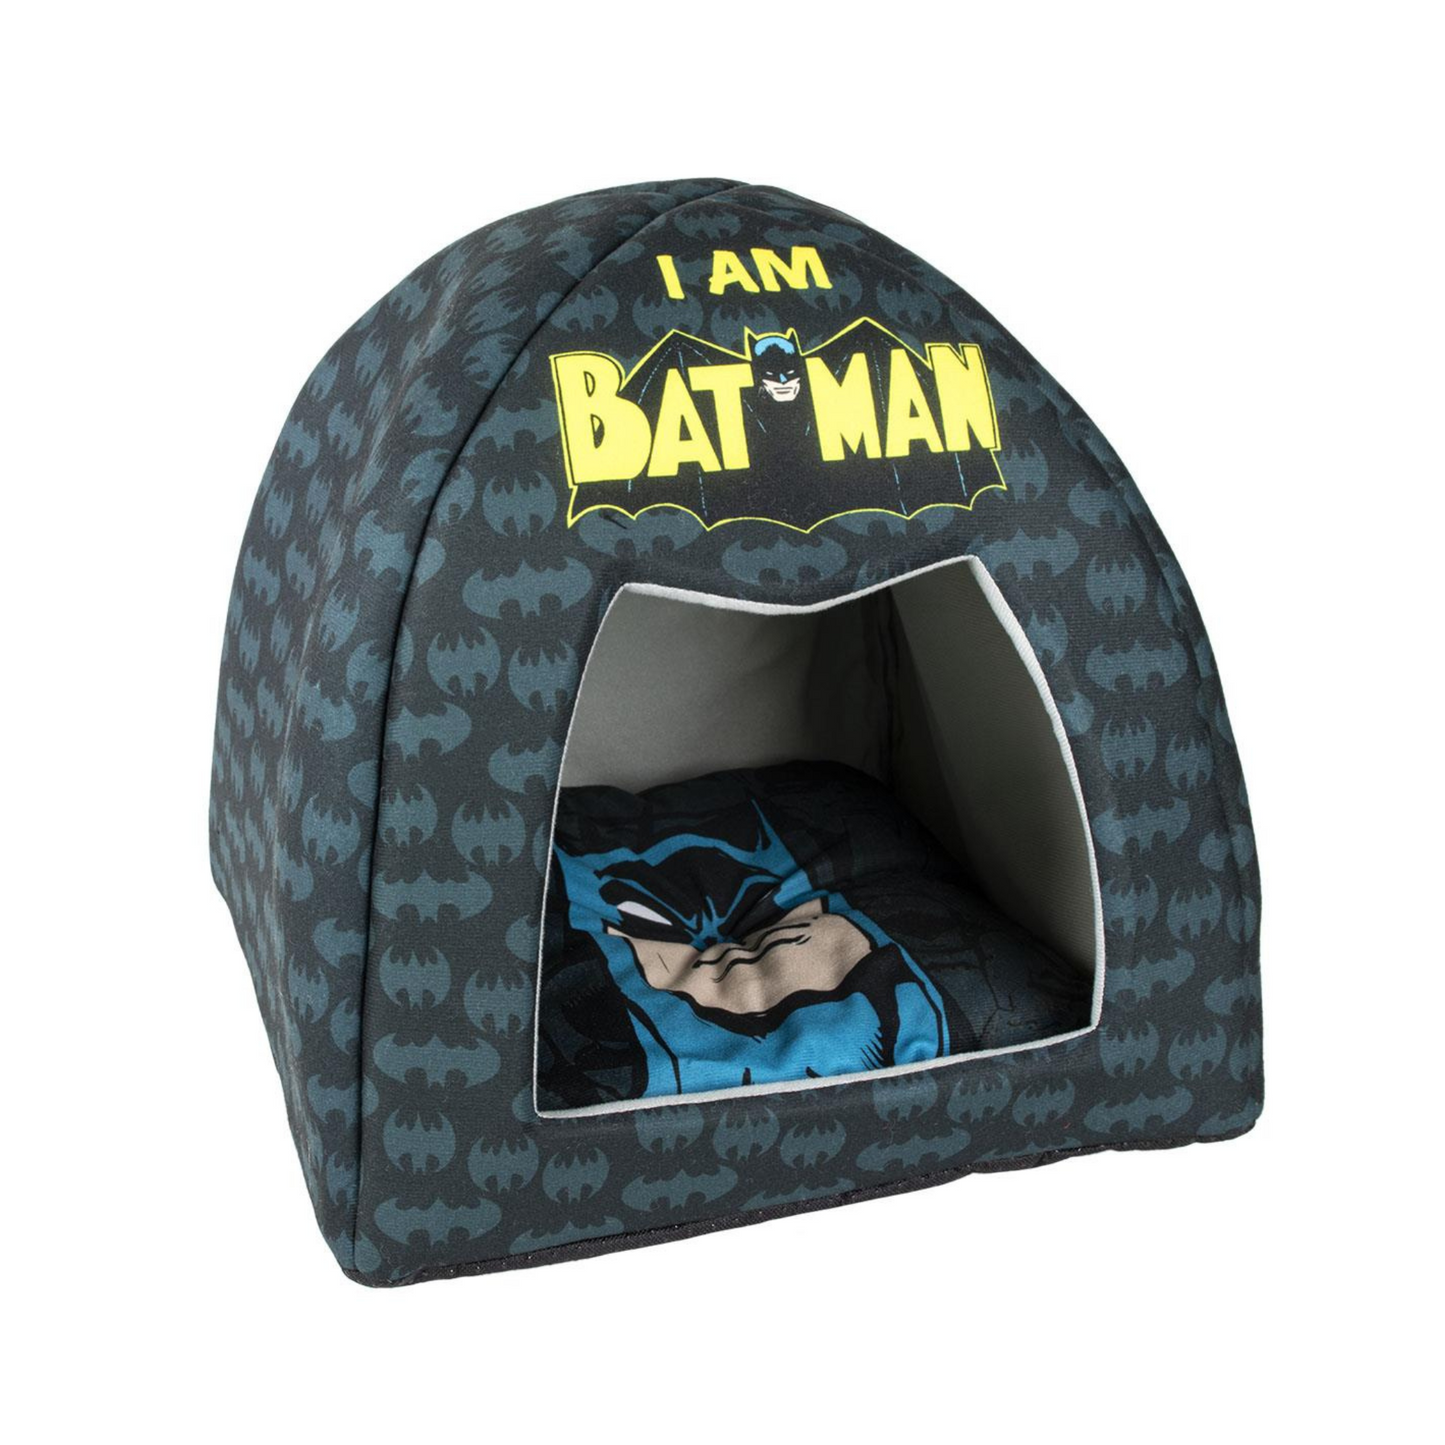 Batman Dog & Cat Cave Bed